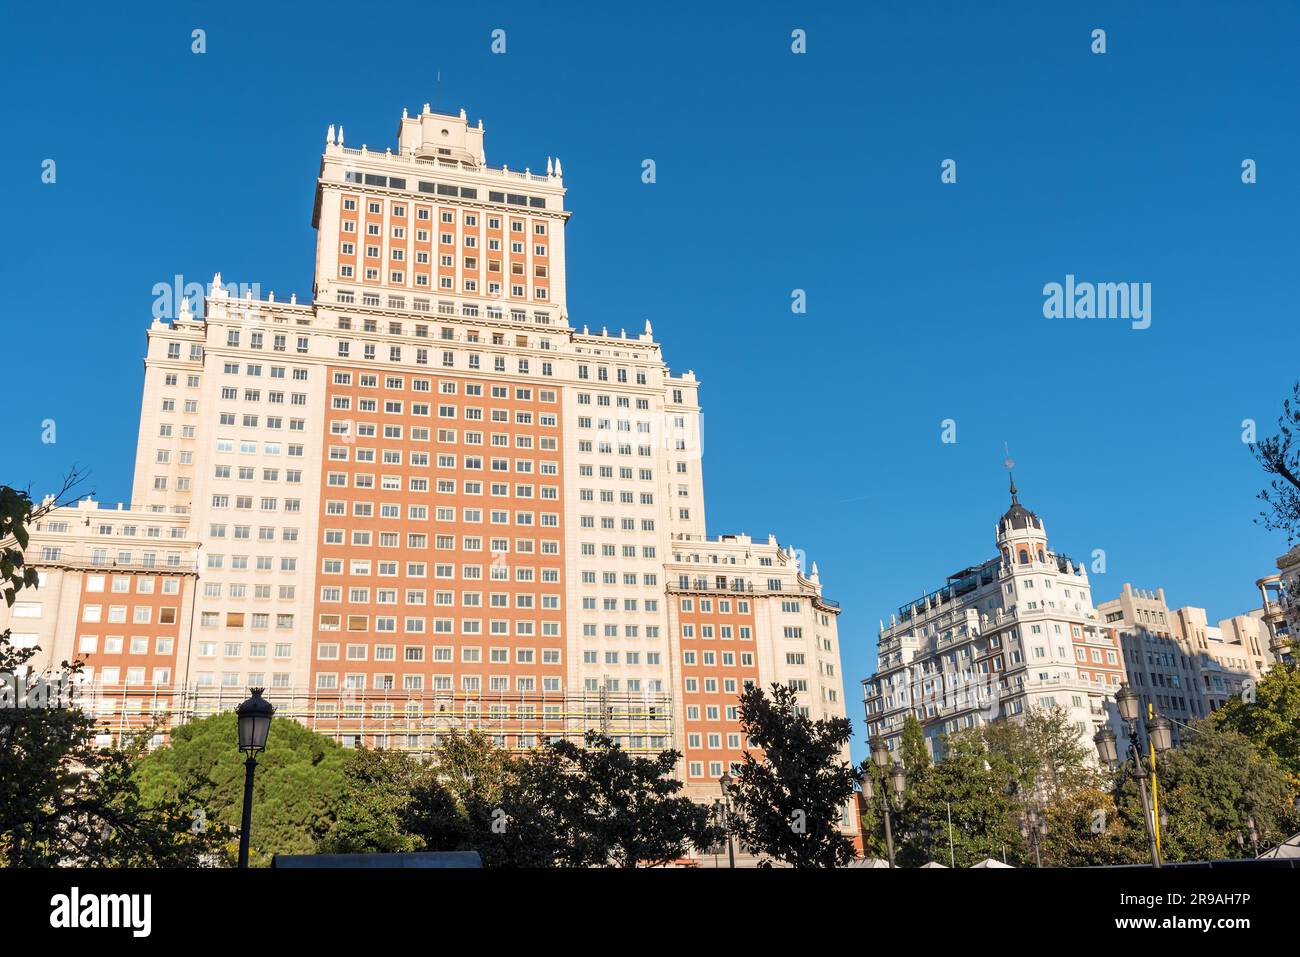 The Edificio Espana at the Plaza de Espana in Madrid, Spain Stock Photo